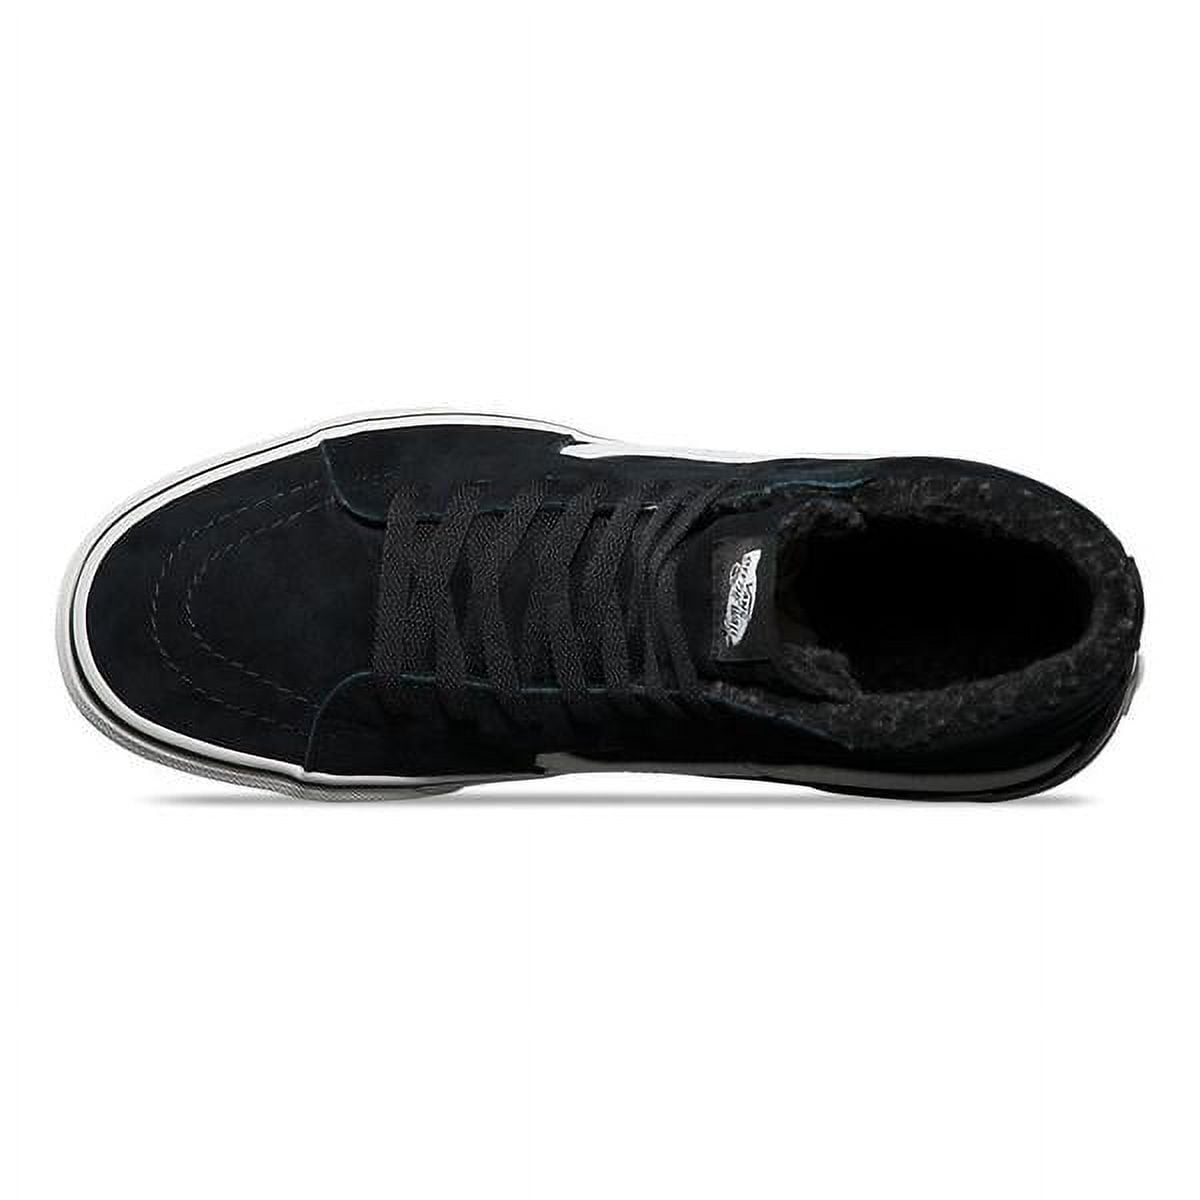 Vans Sk8-Hi Suede And Fleece / Blanc Ankle-High Skateboarding Shoe - 11M 9.5M - Walmart.com